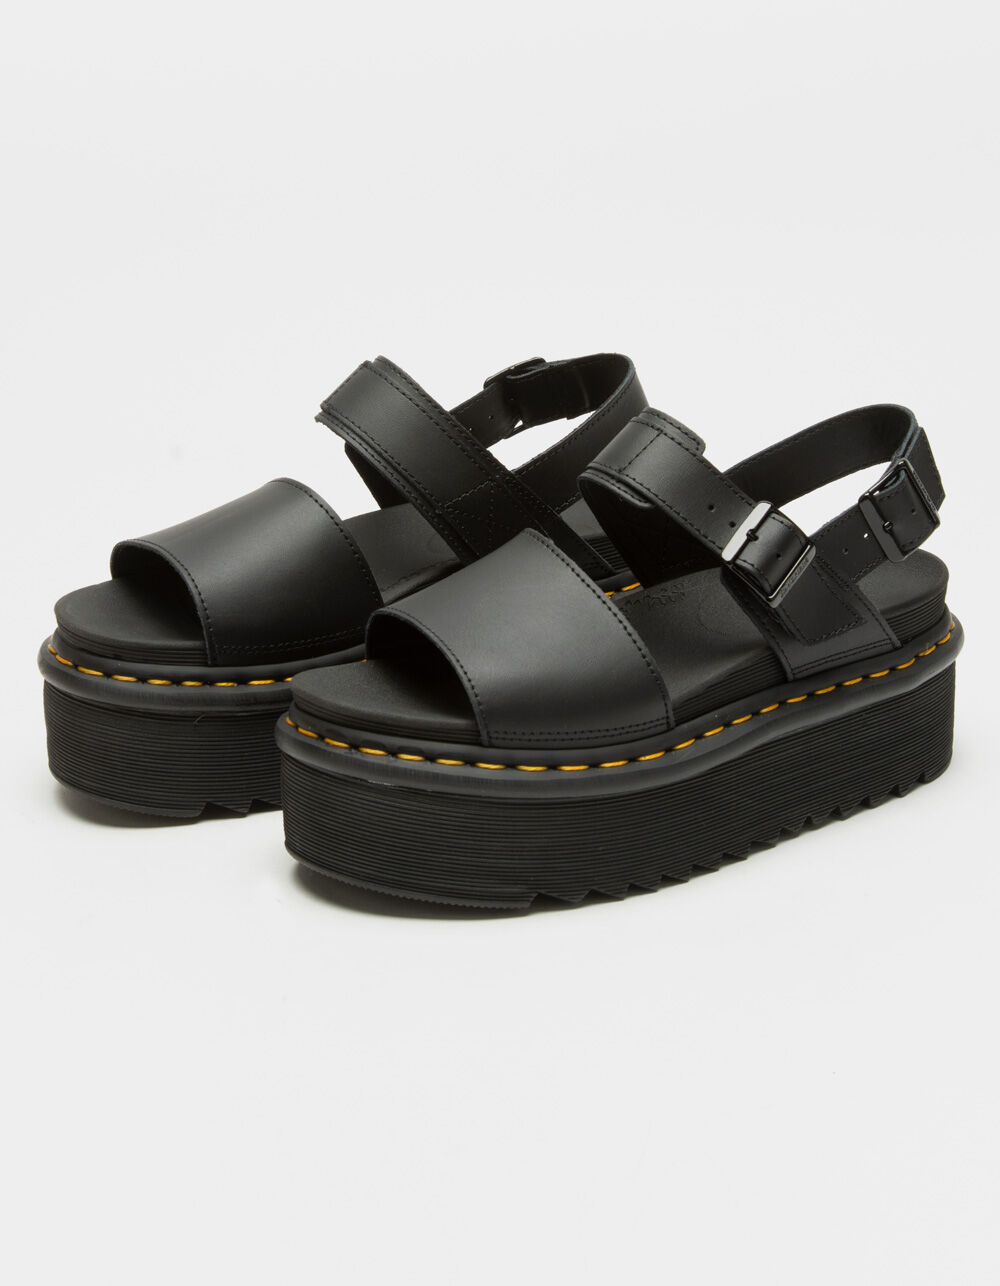 Estatos Casual Wear Ladies Black High Heel Flat Platform Sandal Size EUR  37